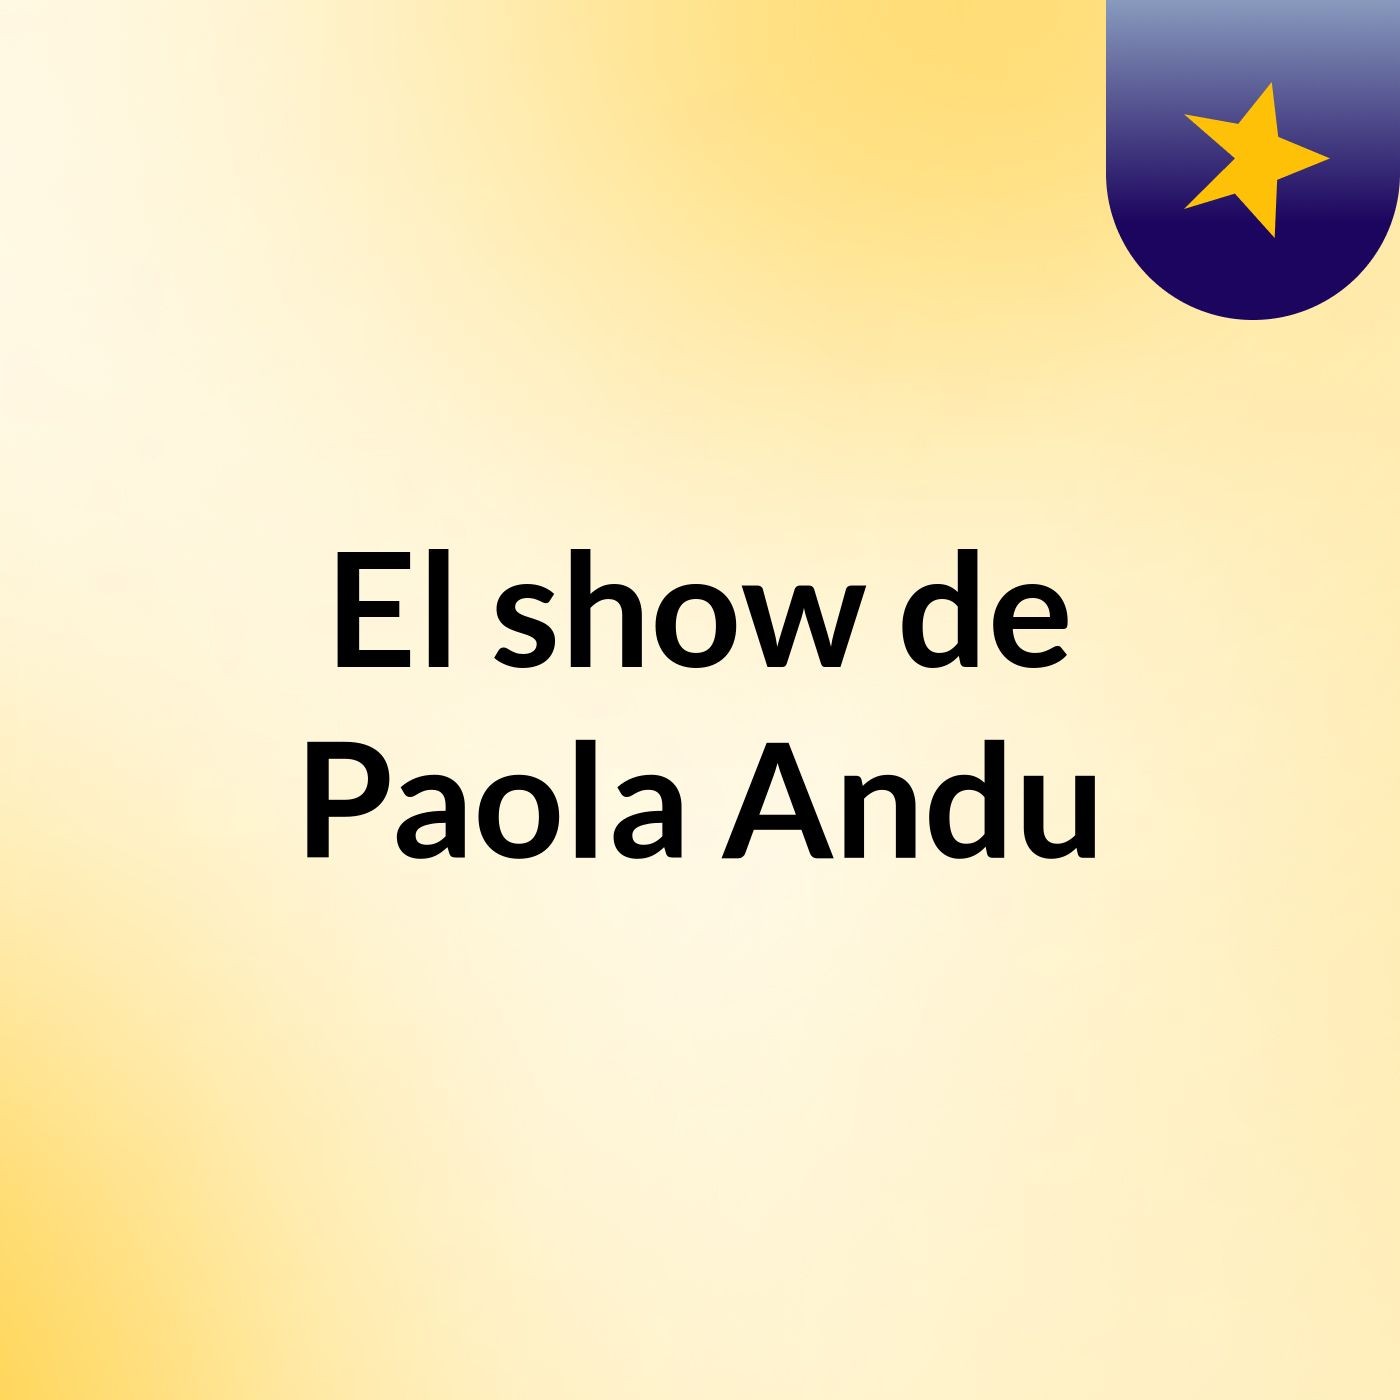 El show de Paola Andu